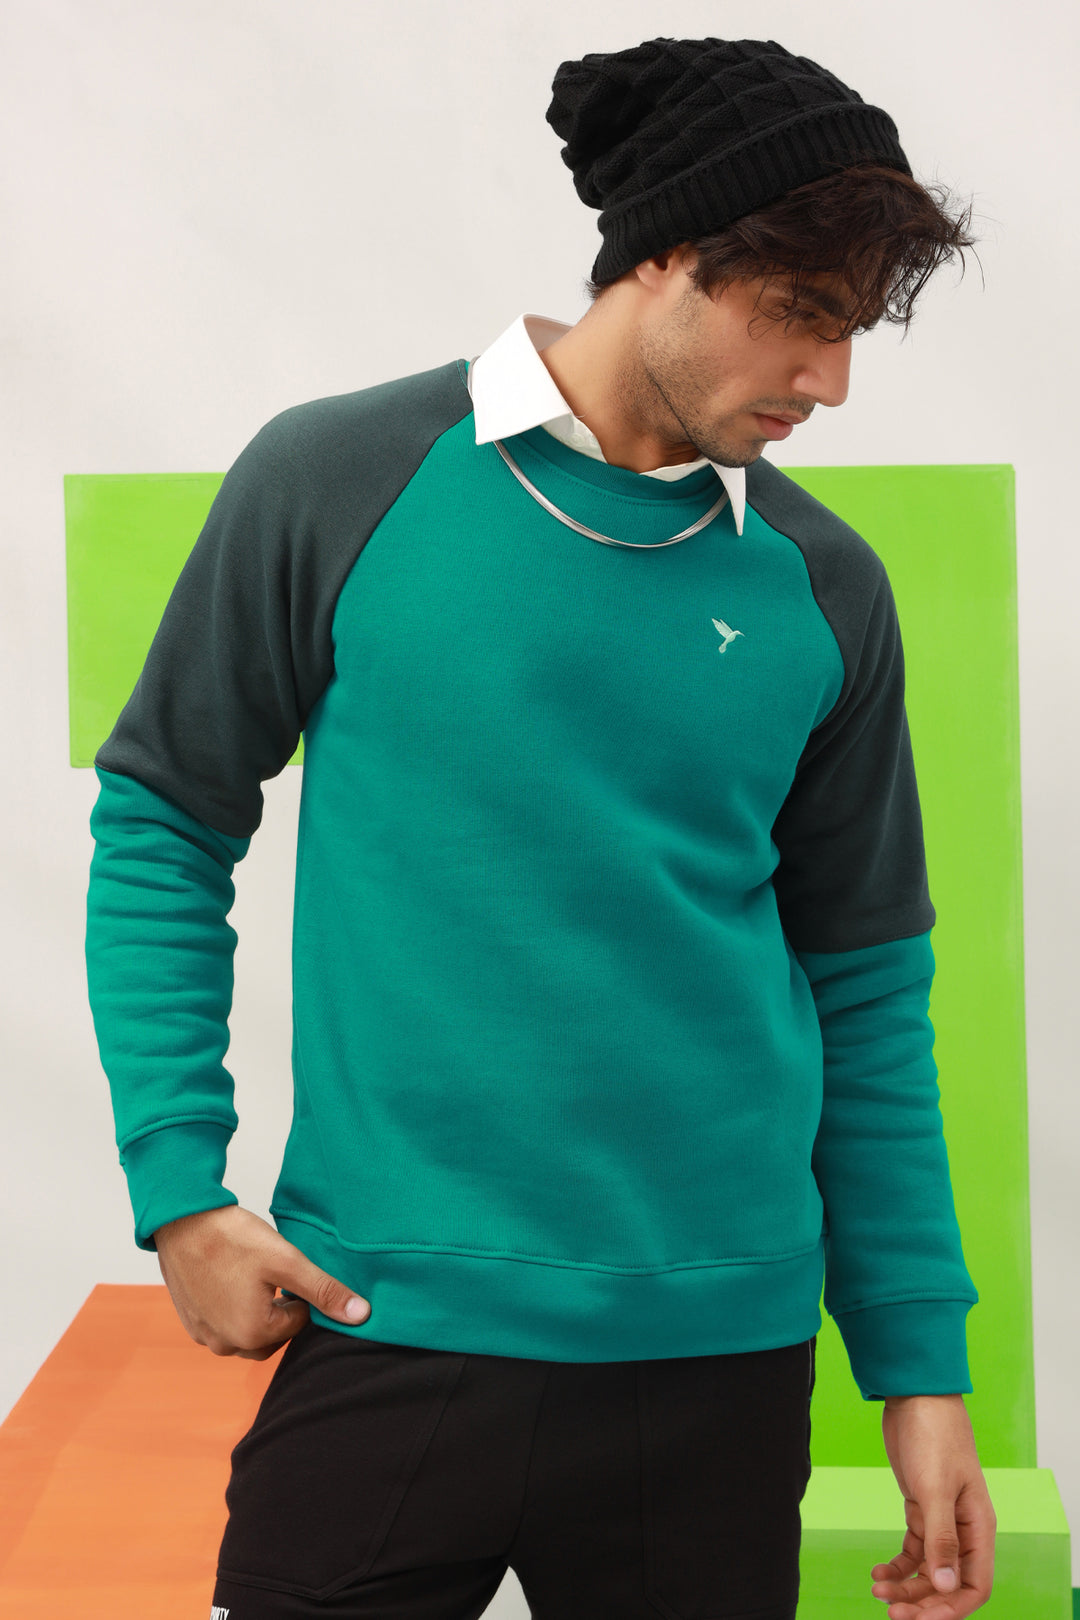 Teal & Green Raglan Sweatshirt